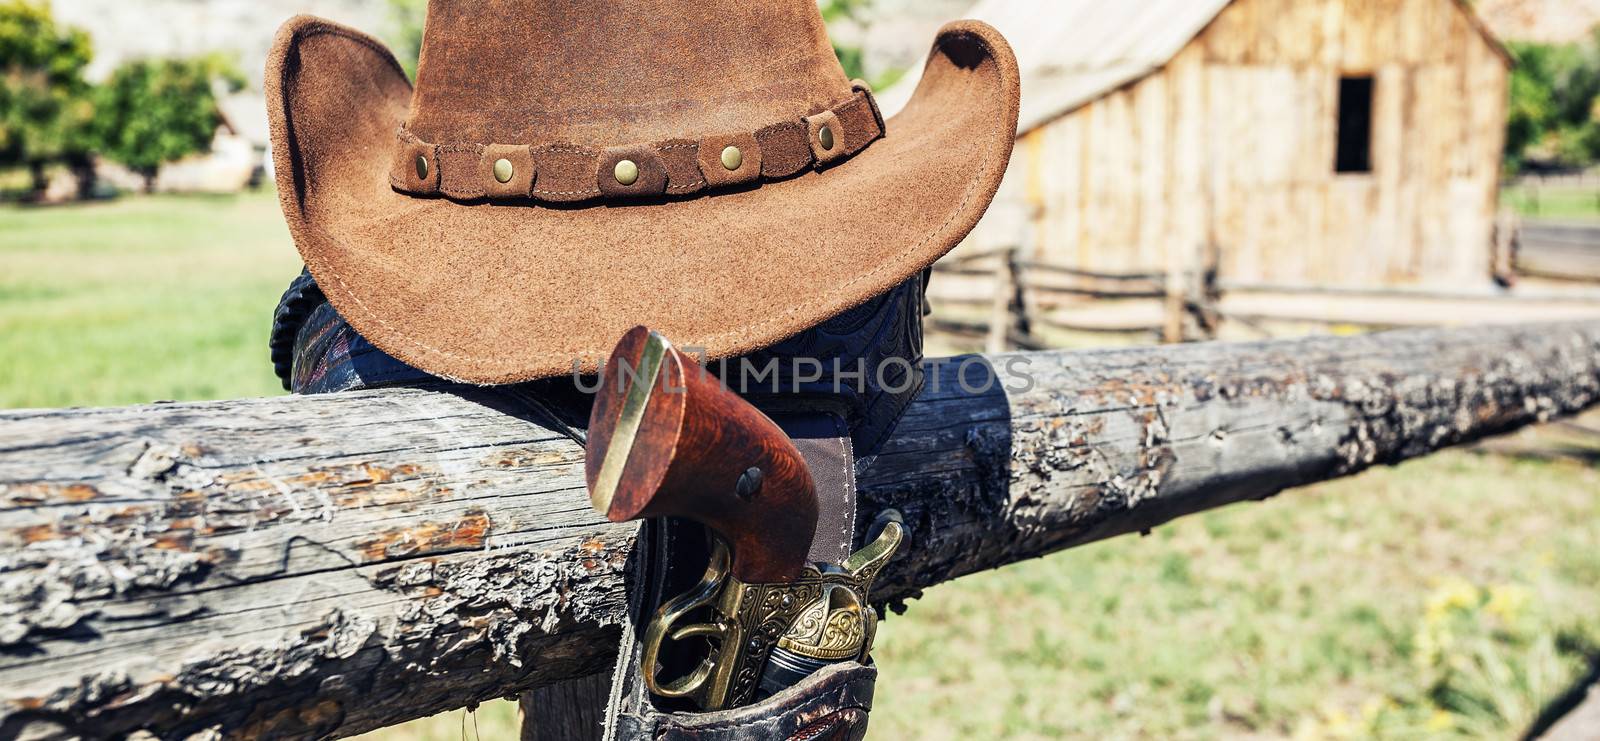 cowboy gun and hat by vwalakte